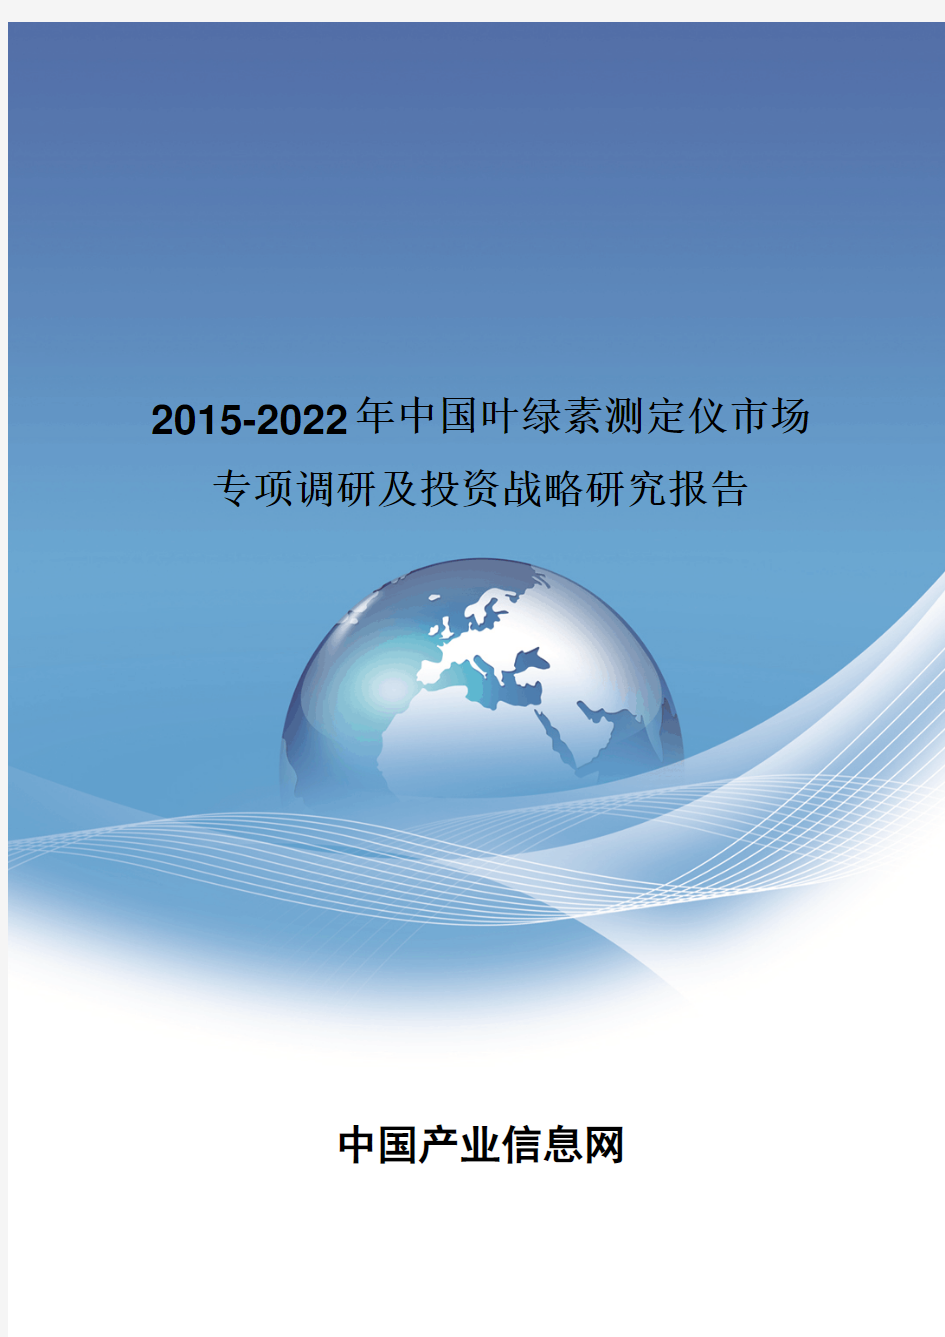 2015-2022年中国叶绿素测定仪市场投资战略研究报告